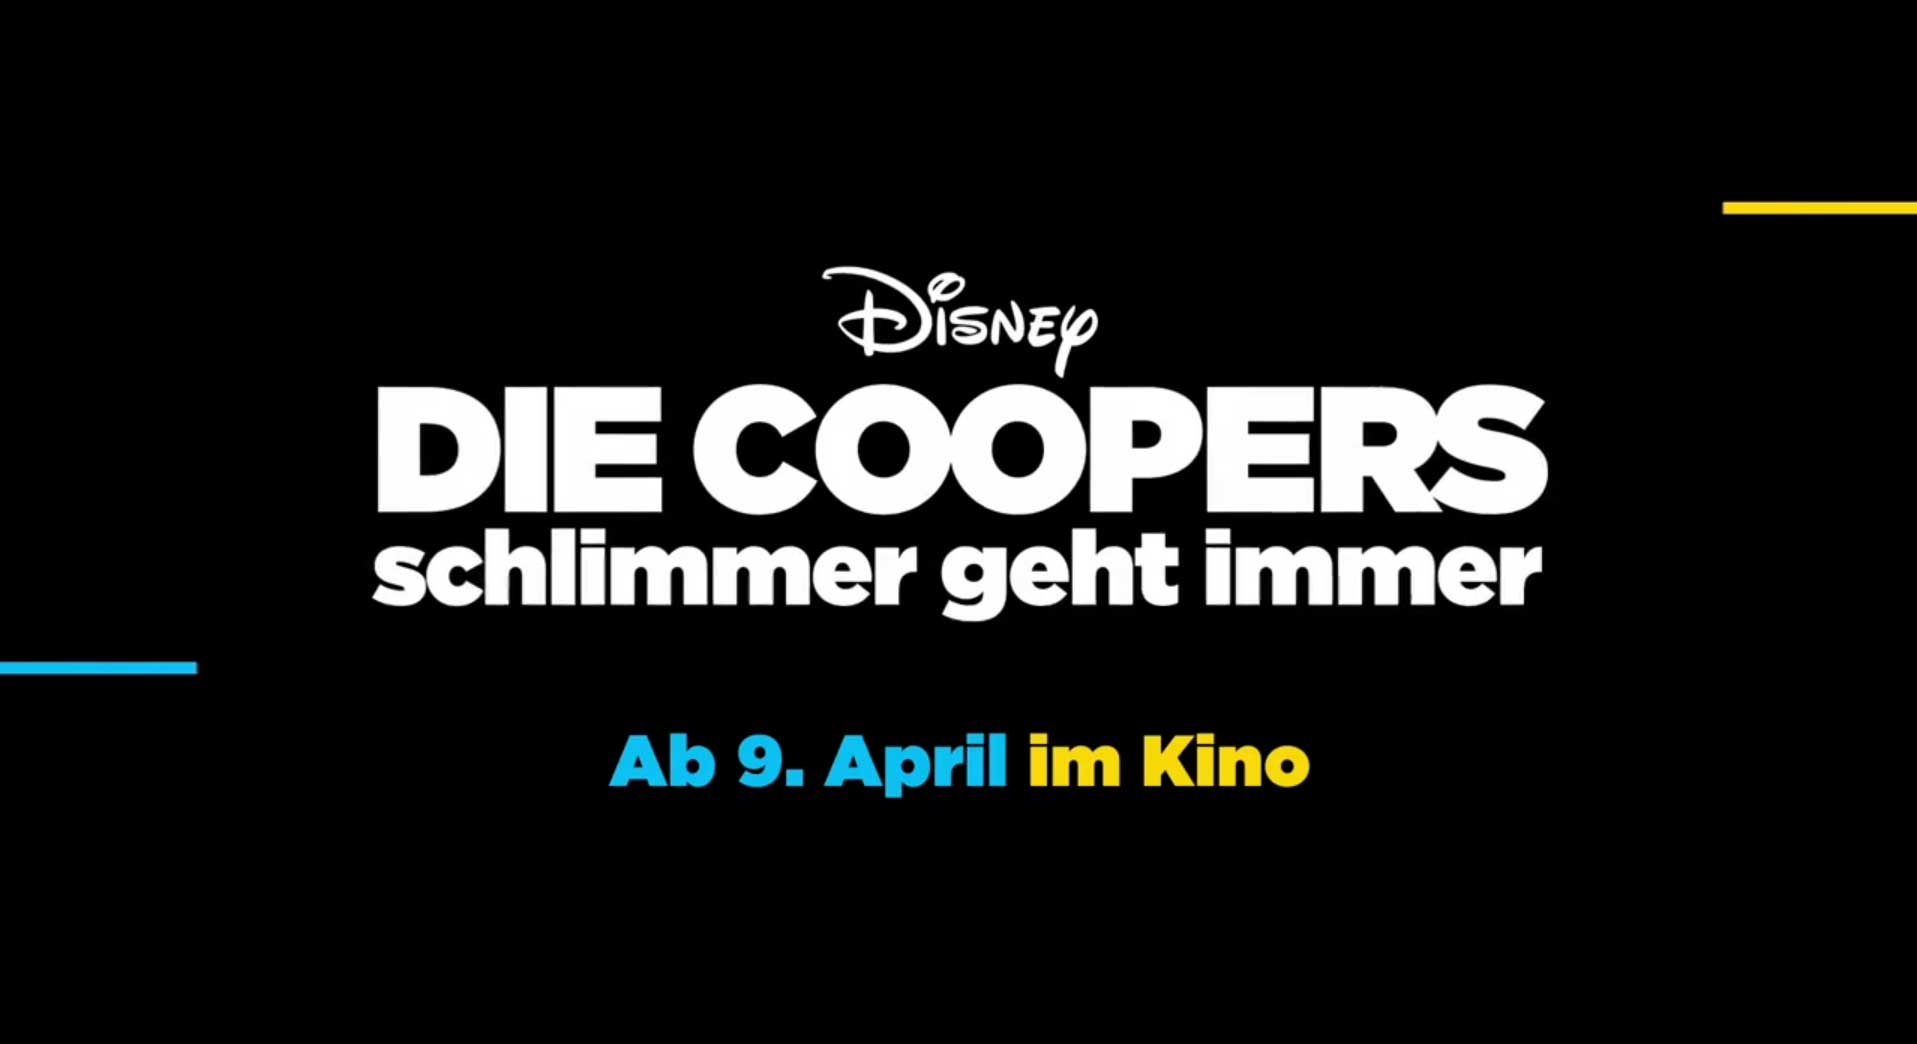 Die Coopers schlimmer geht immer: Kinostart am 9. April 2015 - Bildquelle: Disney / Trailer